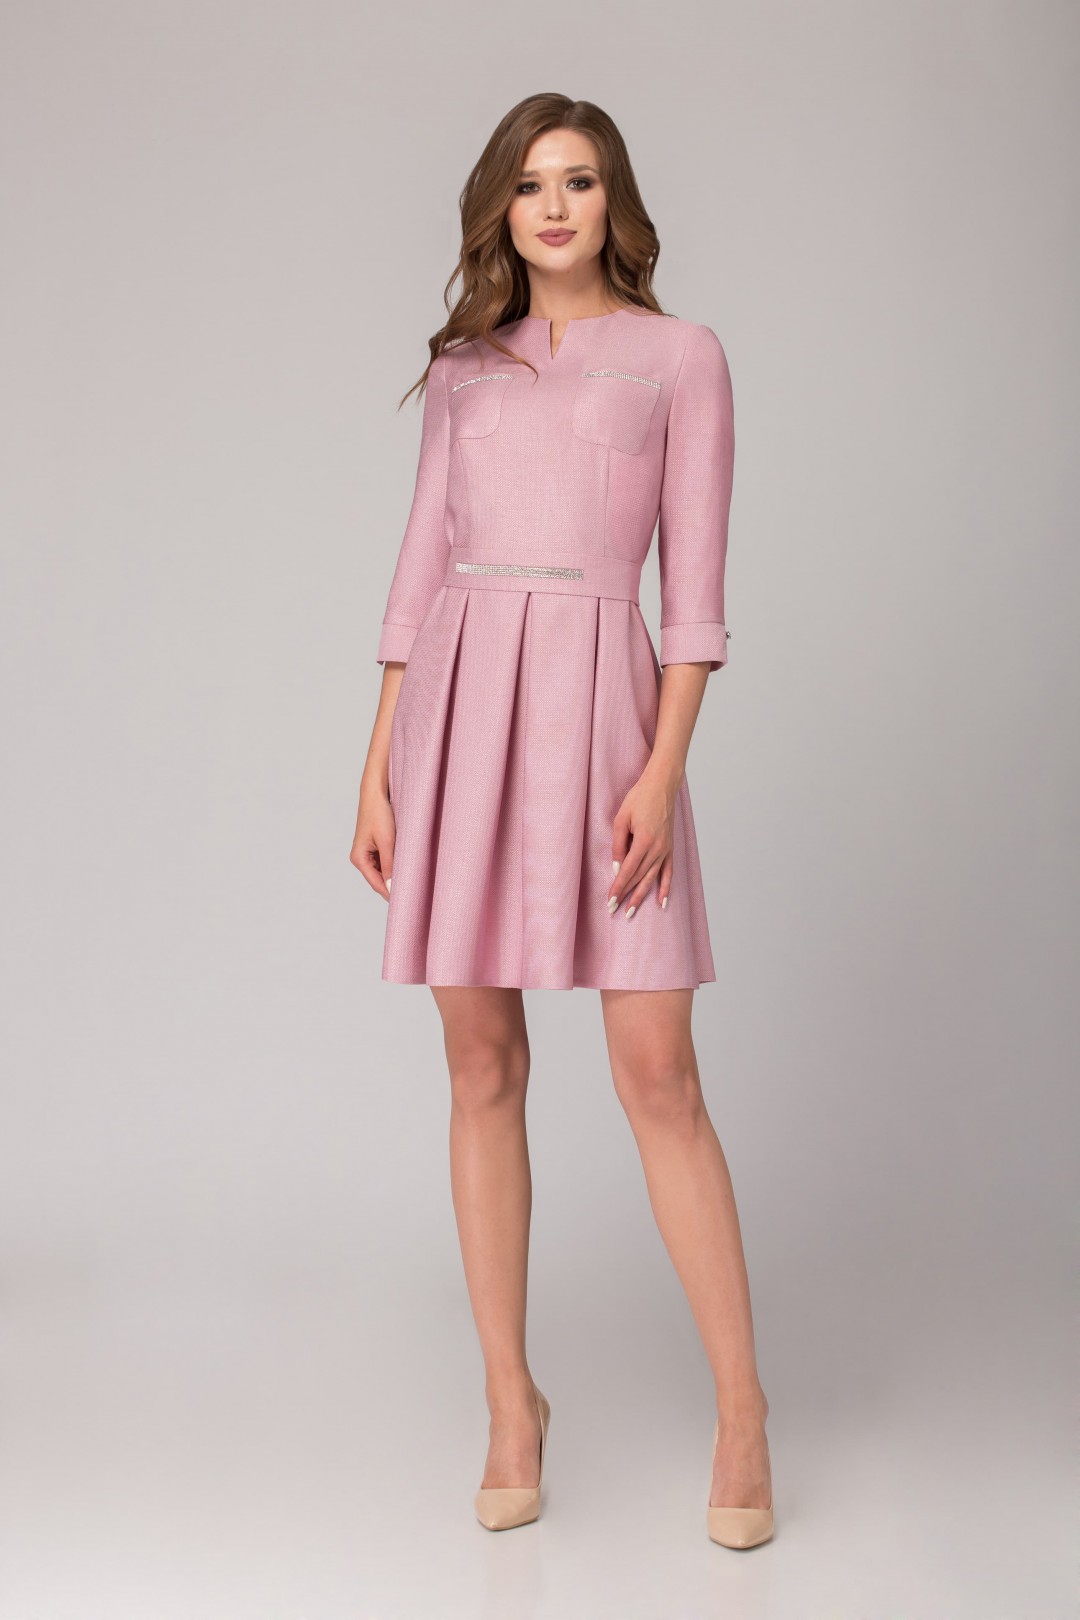 Платье Светлана-Стиль 1085 розовый